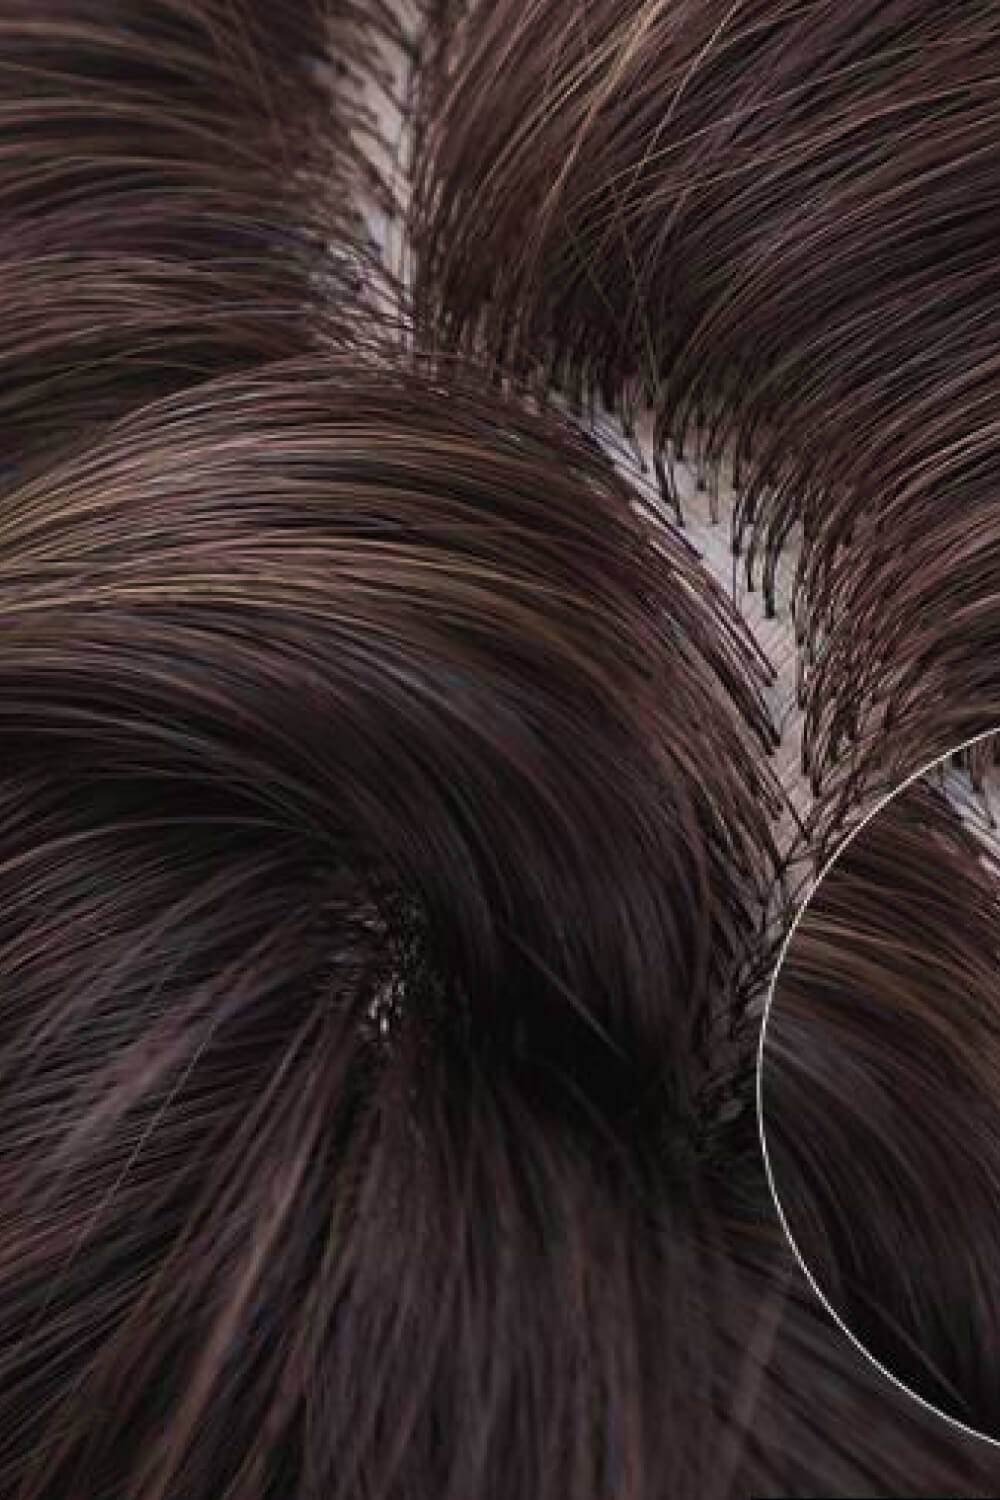 Bobo Wave Synthetic Wigs 12'' - PINKCOLADA-Beauty-100100250777160